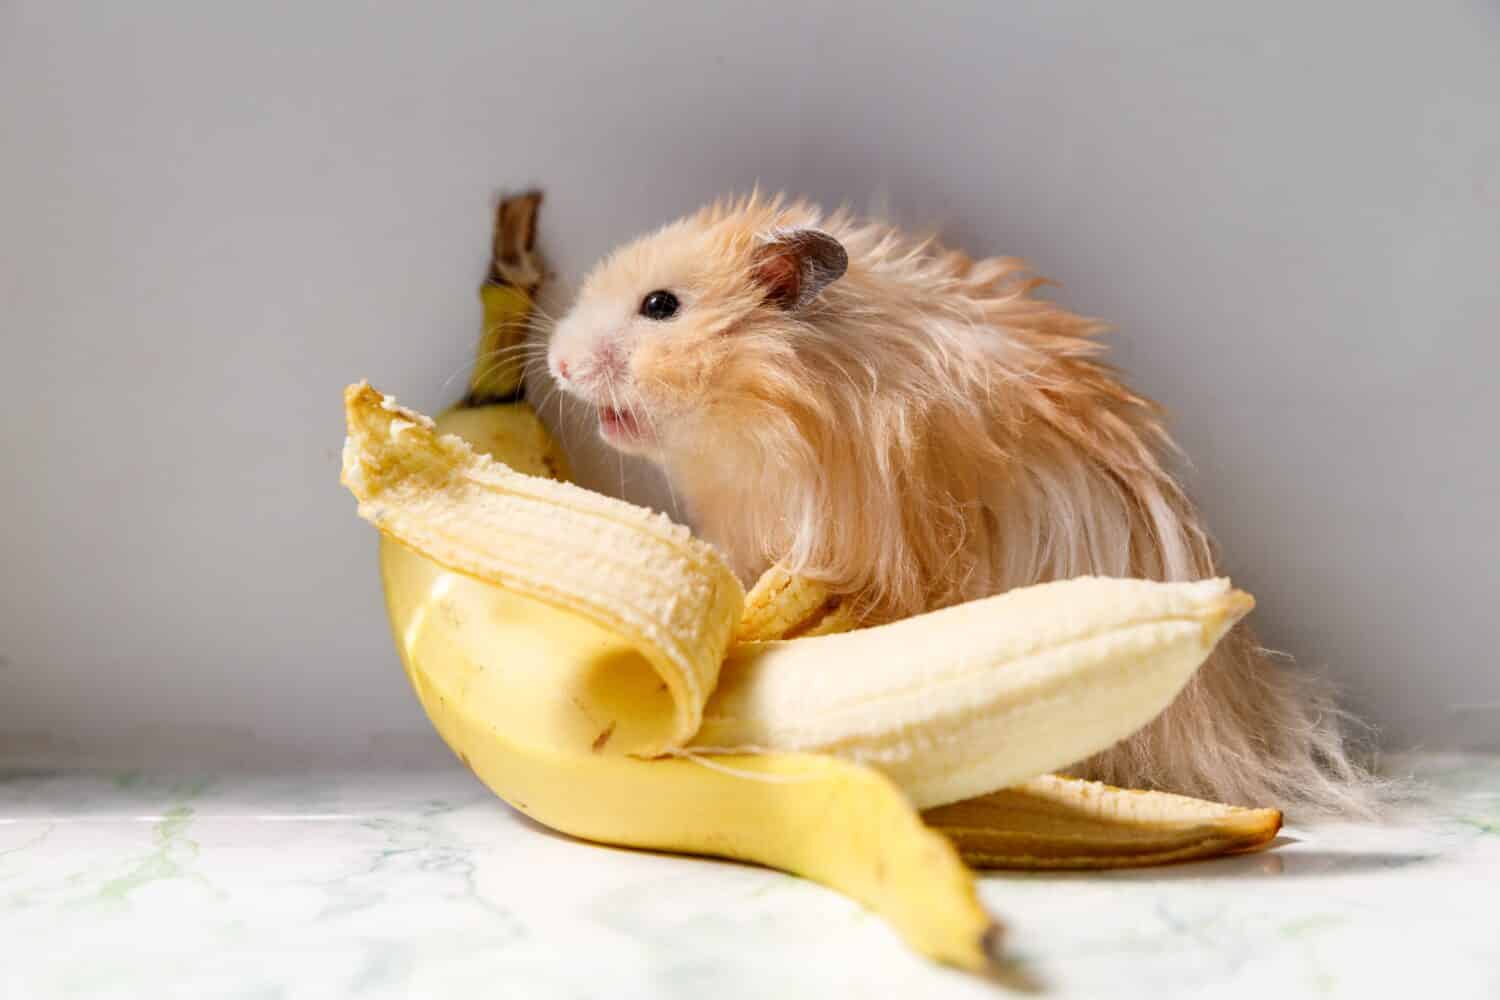 Хомяк и банан. Хомяк и банан картинка. Сирийский хомяк ест банан. Хомяк есть большой банан. Можно ли сирийскому хомяку банан